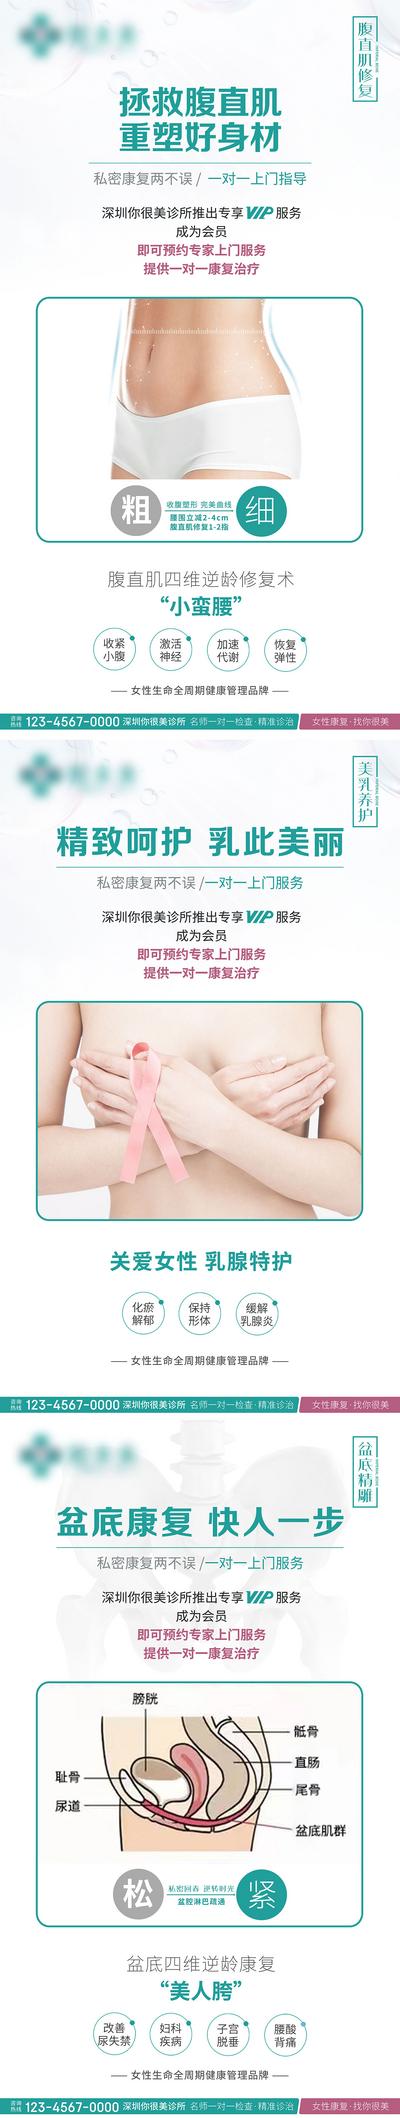 南门网 海报 女性 私密 骨盆 乳房 乳腺 专家 系列